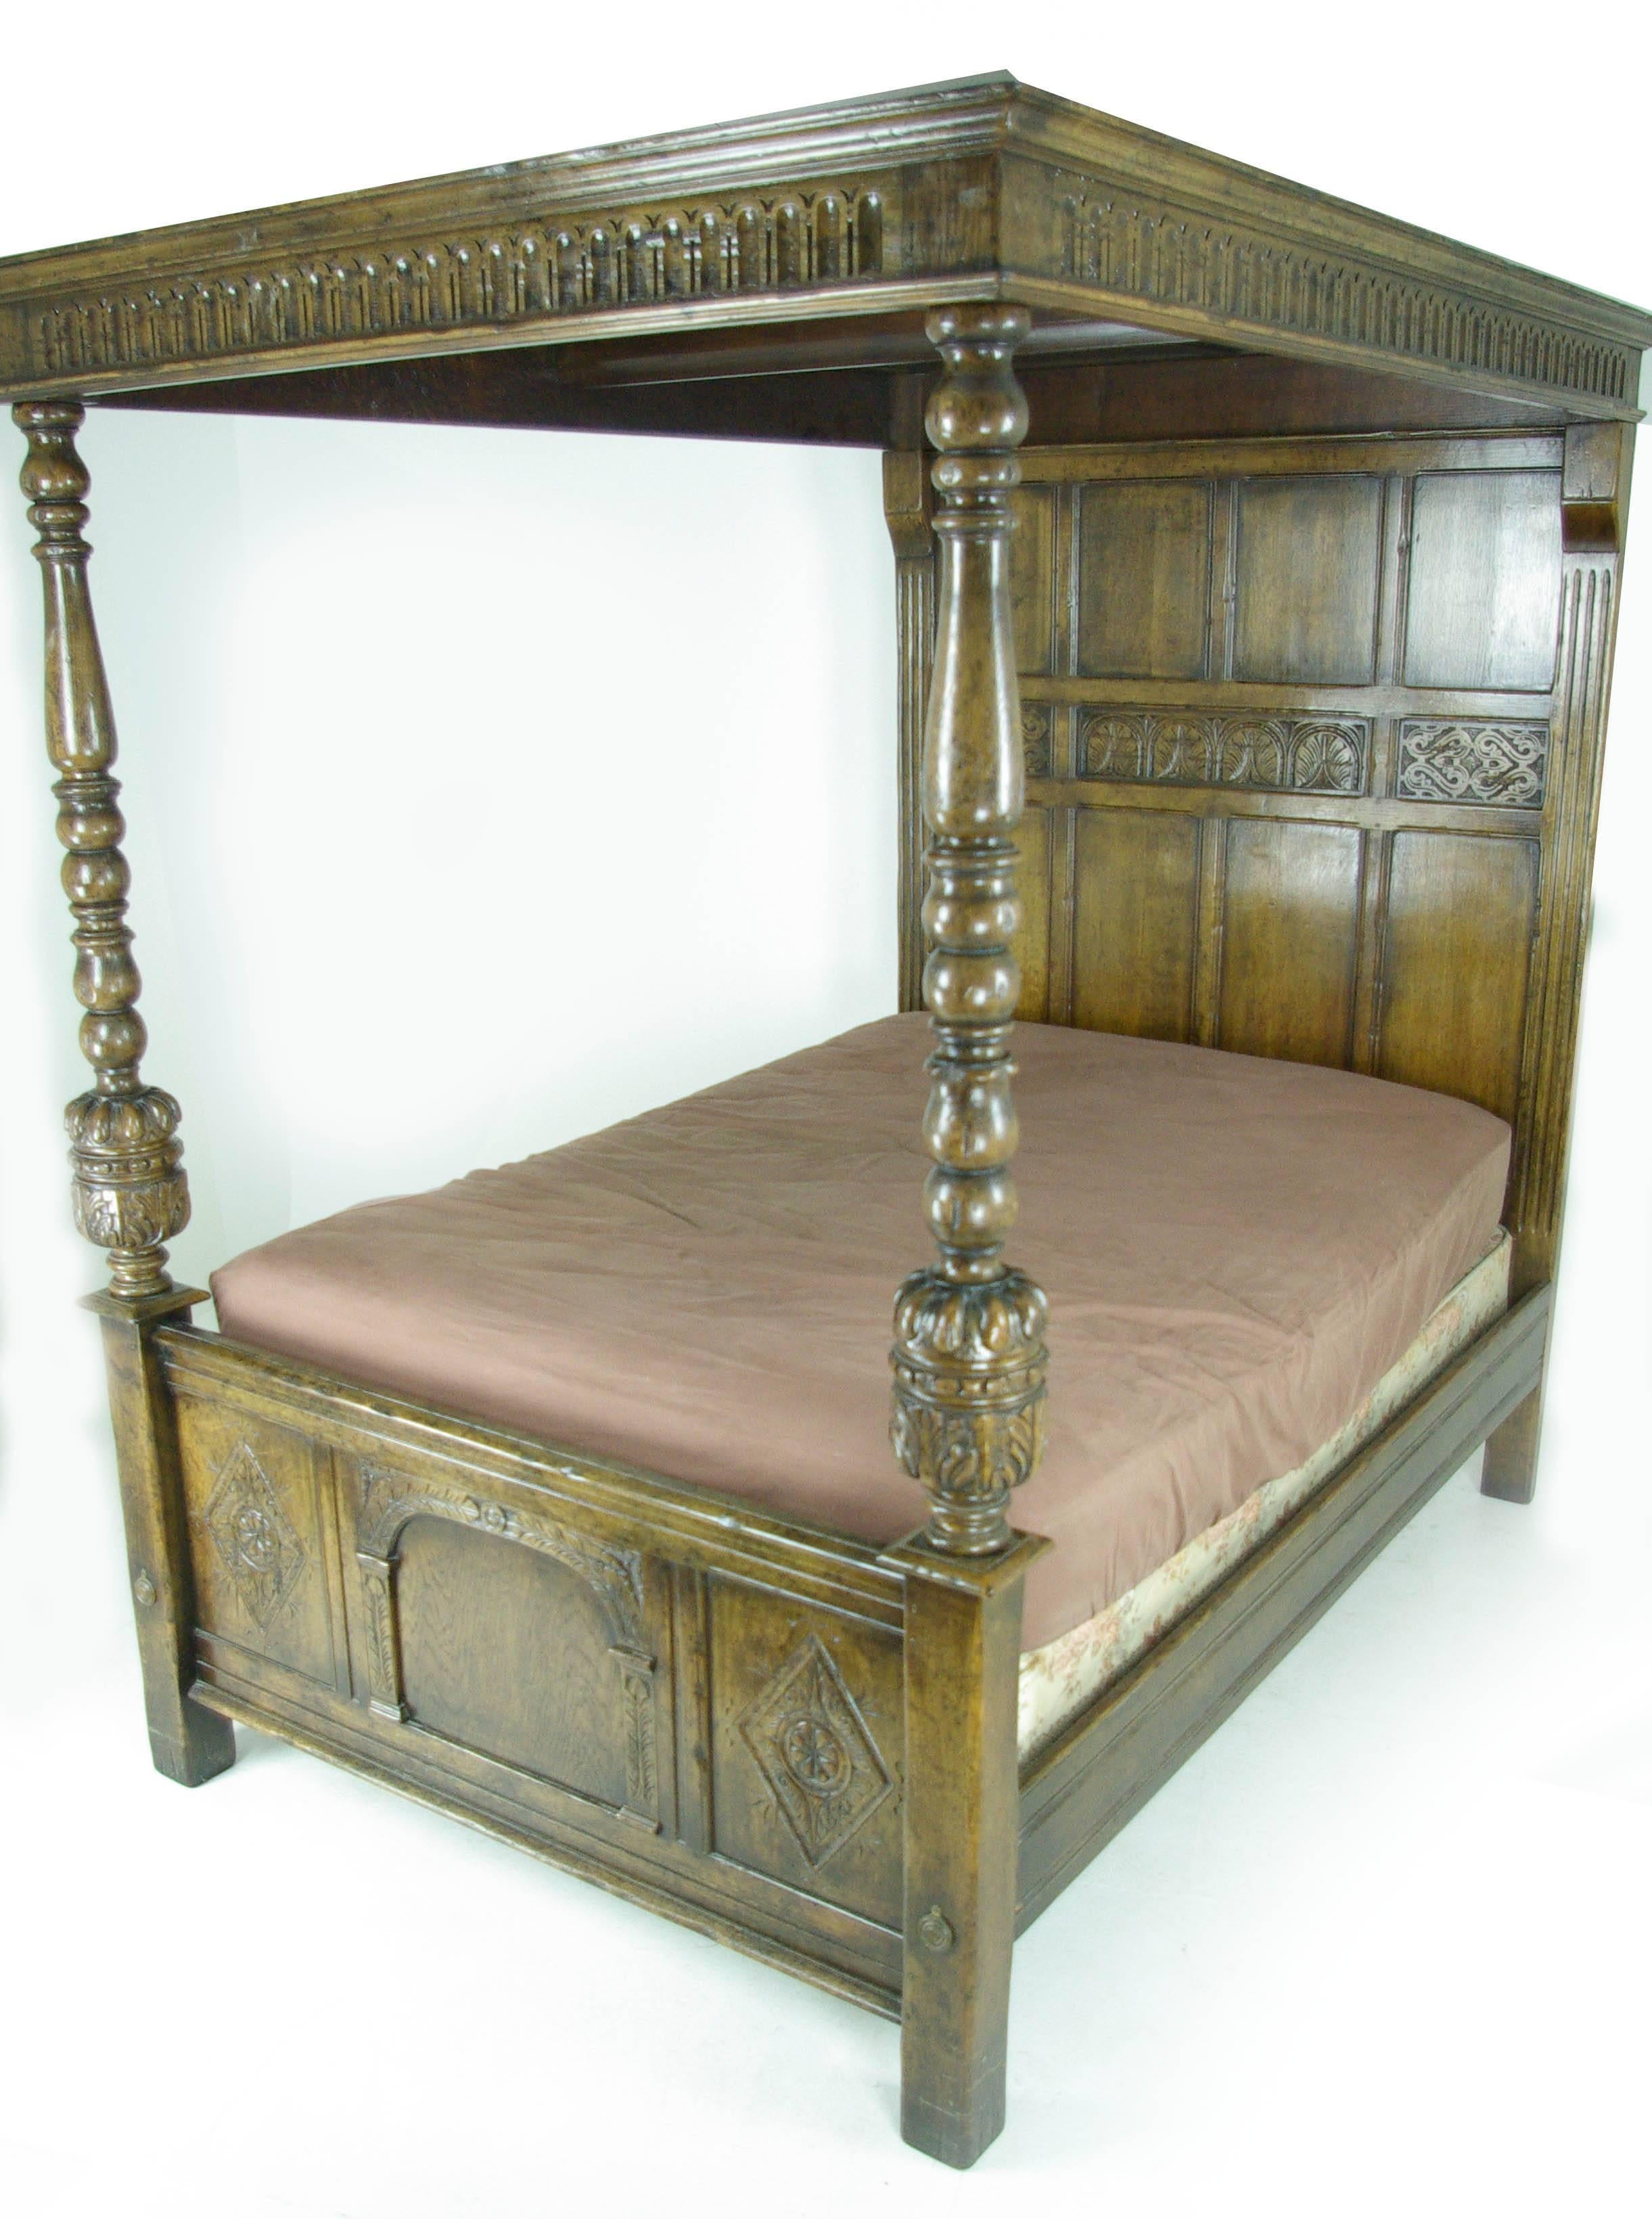 antique tester bed